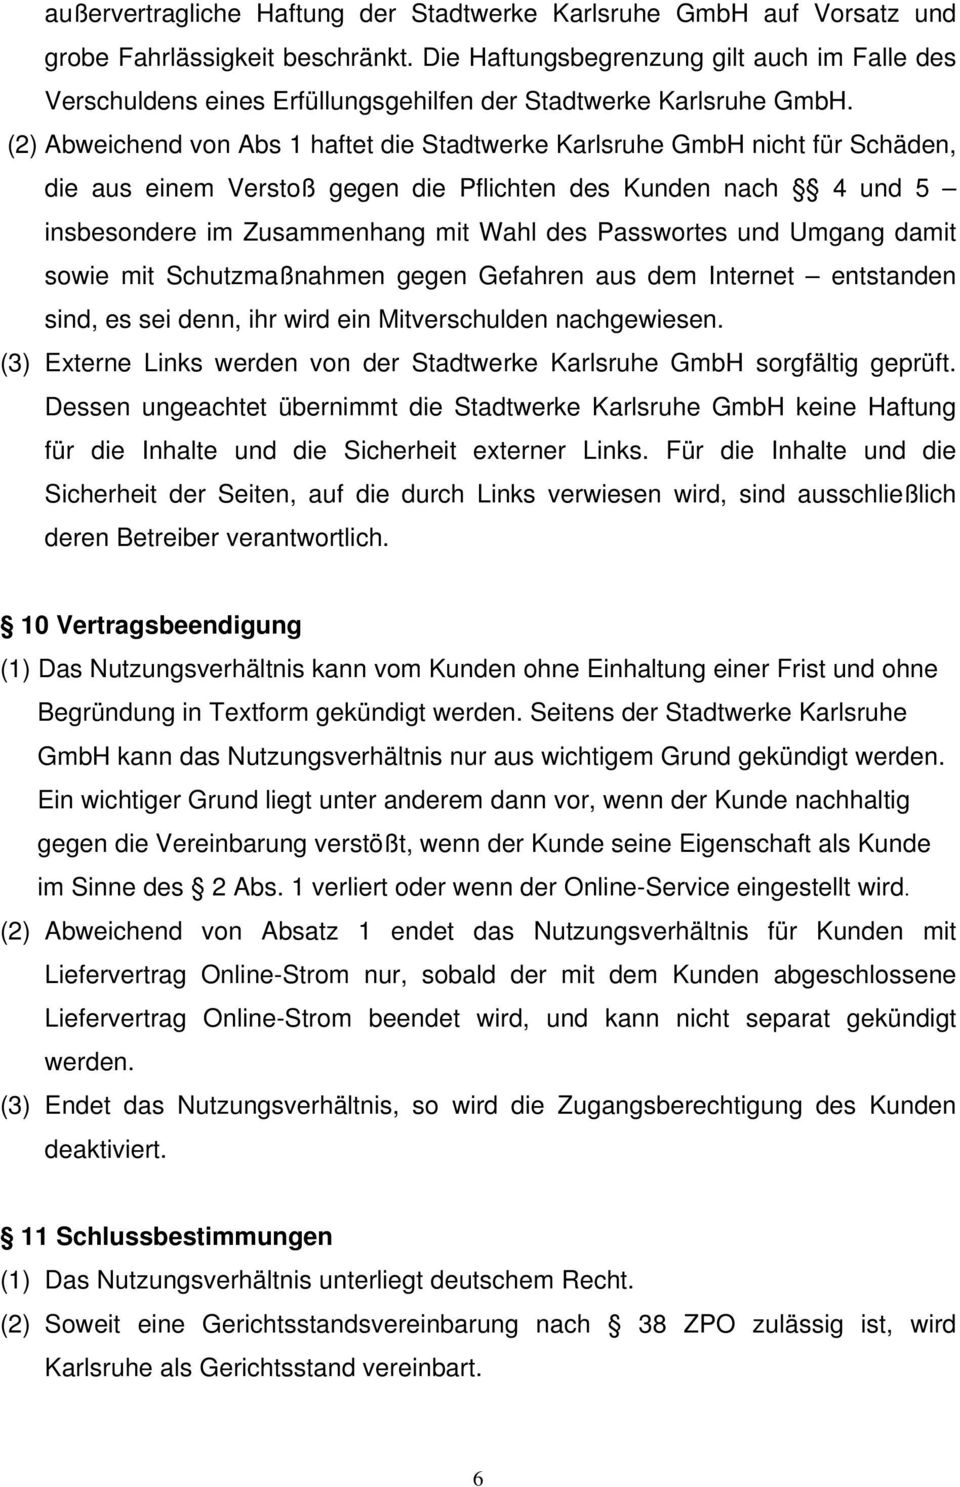 (2) Abweichend von Abs 1 haftet die Stadtwerke Karlsruhe GmbH nicht für Schäden, die aus einem Verstoß gegen die Pflichten des Kunden nach 4 und 5 insbesondere im Zusammenhang mit Wahl des Passwortes